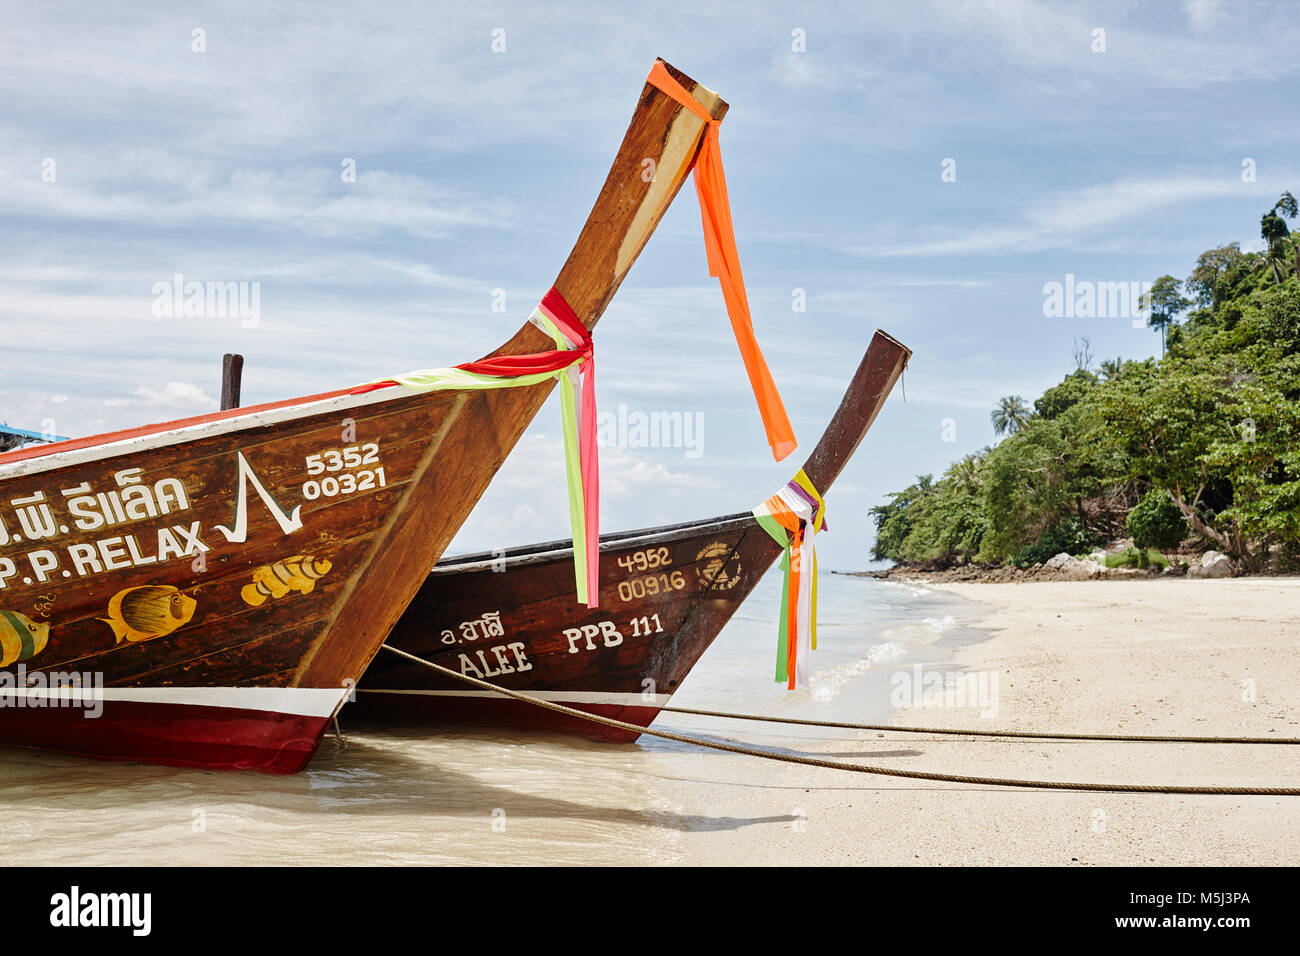 La Thaïlande, les îles Phi Phi, Ko Phi Phi, la location des bateaux à longue queue Banque D'Images